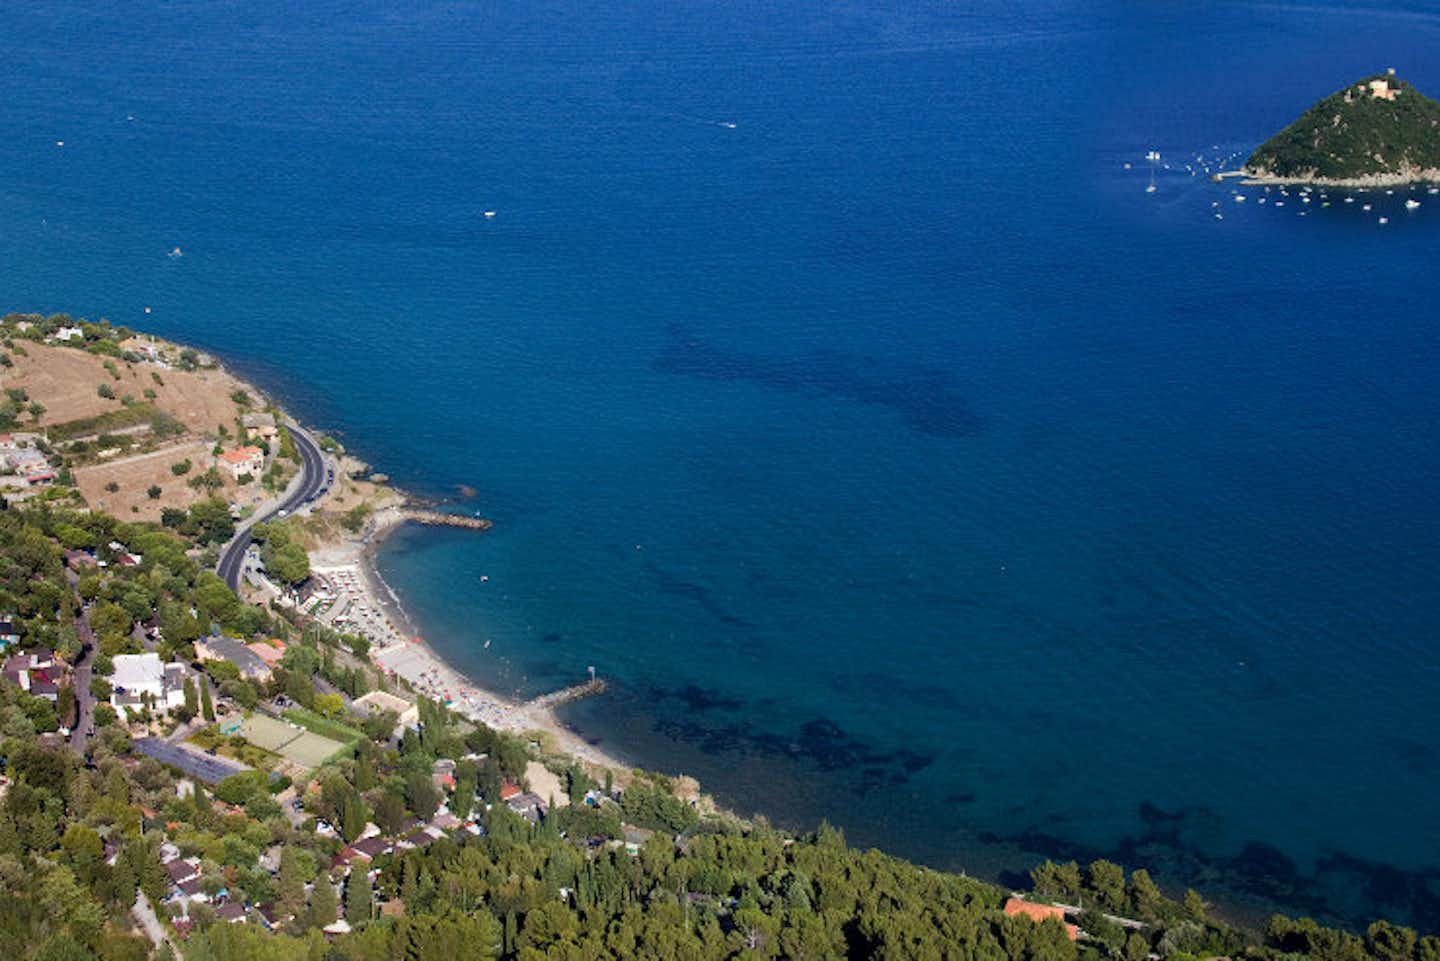 Camping Monti e Mare  -  Campingplatz am Mittelmeer aus der Vogelperspektive in der Nähe von der Insel Gallinara